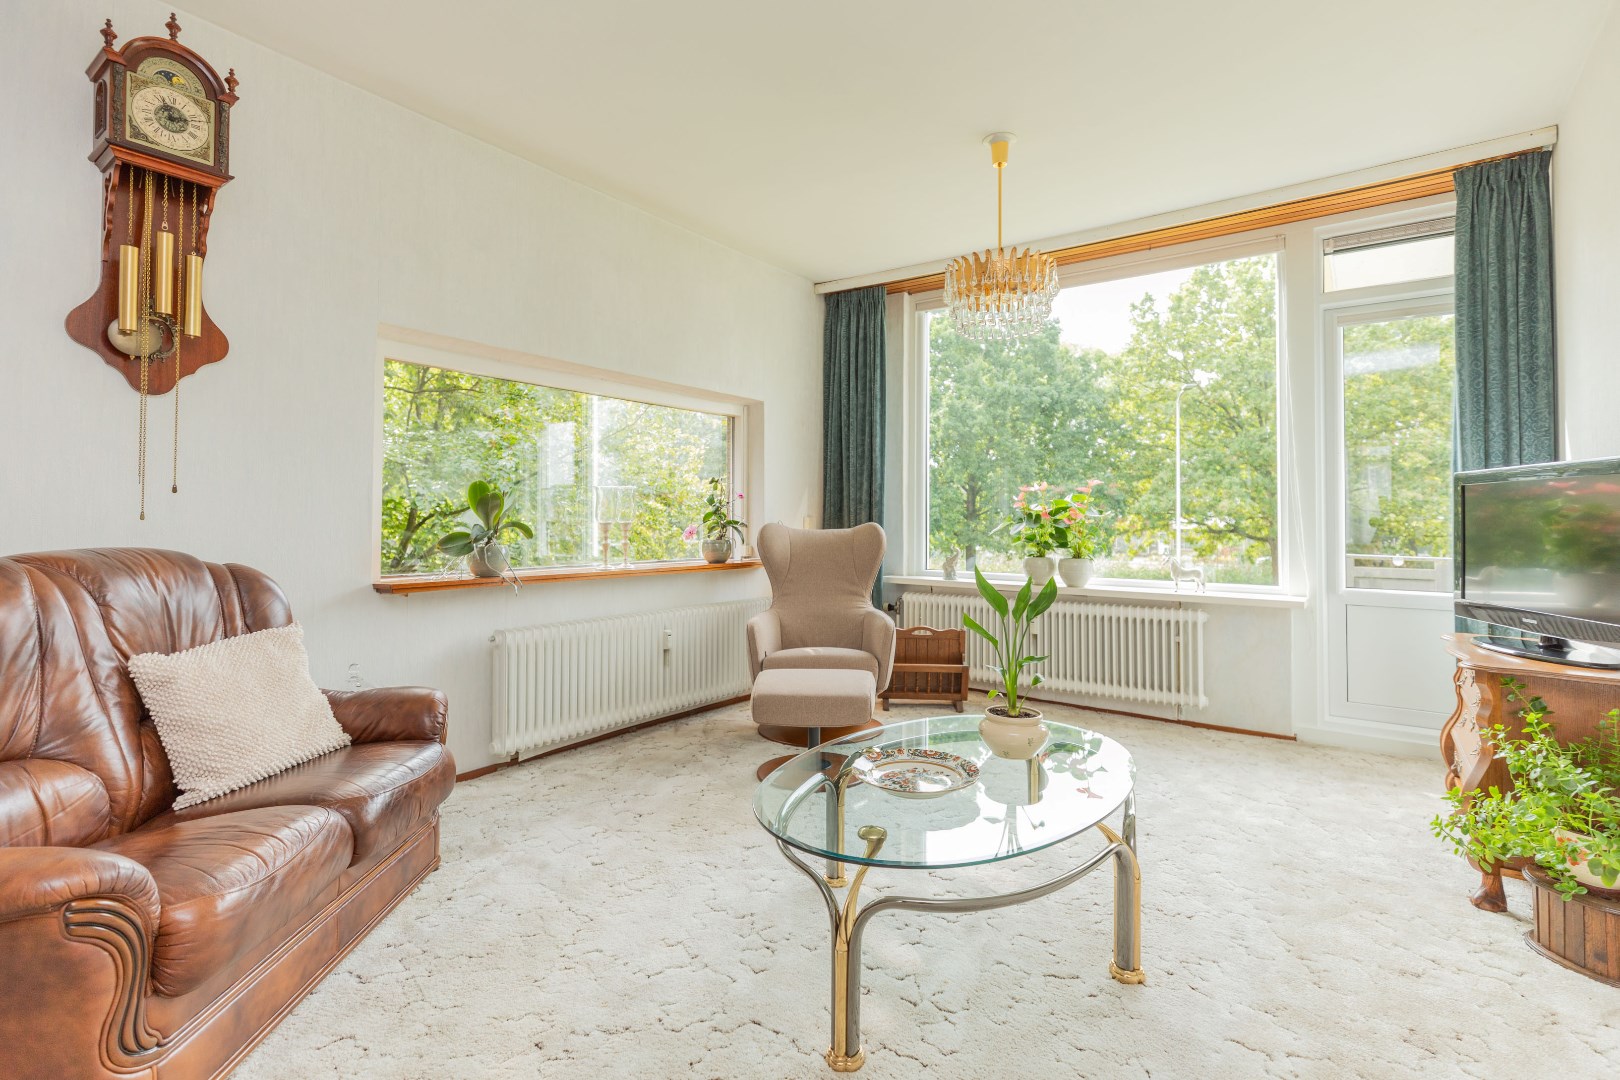 Dit prachtige 3-kamer HOEK appartement op de eerste etage met ondergelegen garage ligt in de gewilde wijk Oost in Ridderkerk. 